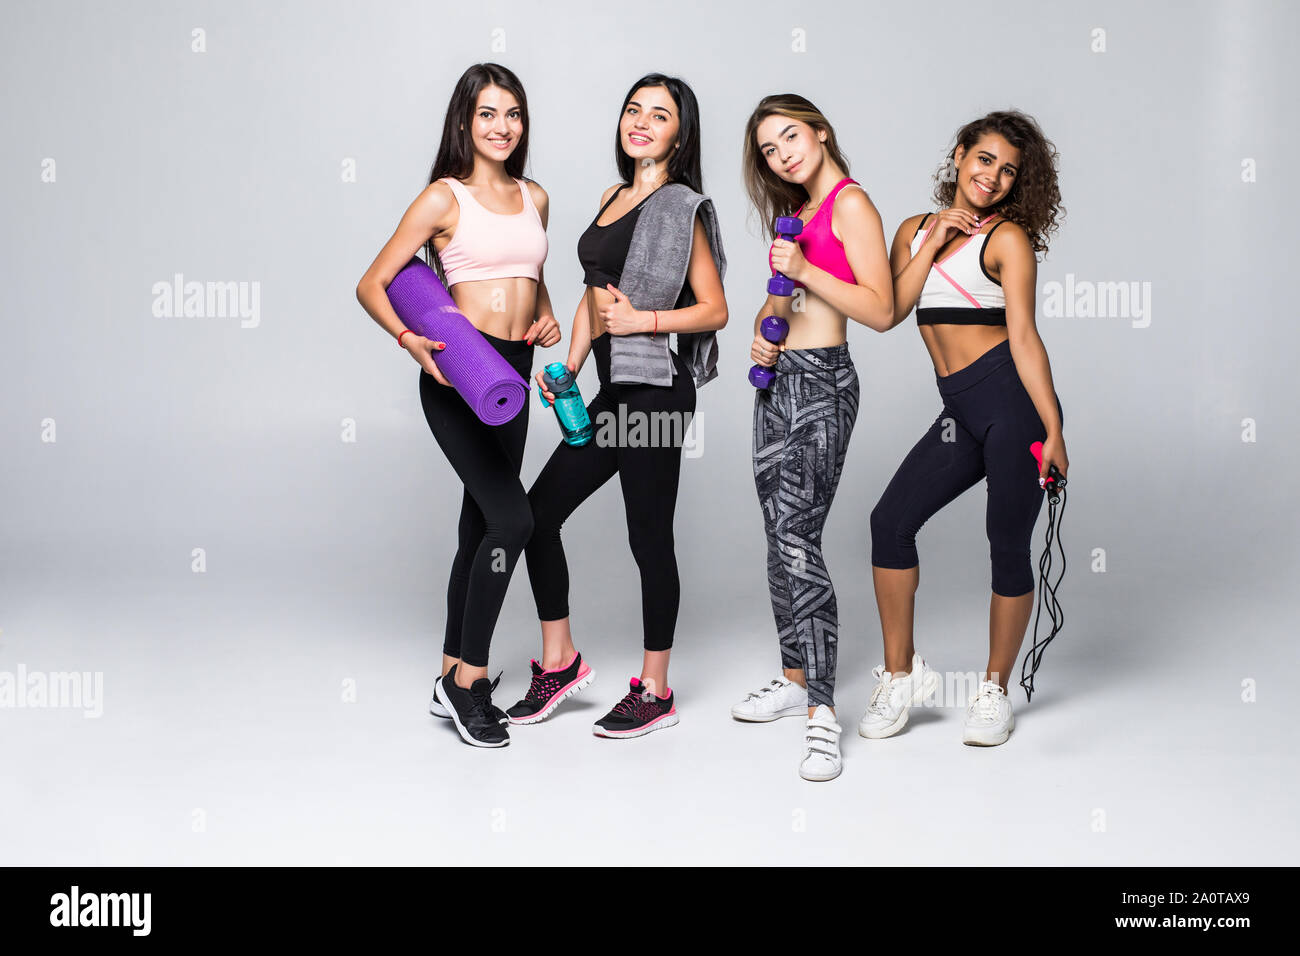 Gruppenporträt junger sportlich begeistert schöne Mädchen mit übung Ausrüstung neben weißen Wand lachen und miteinander reden. Candid funny Stockfoto